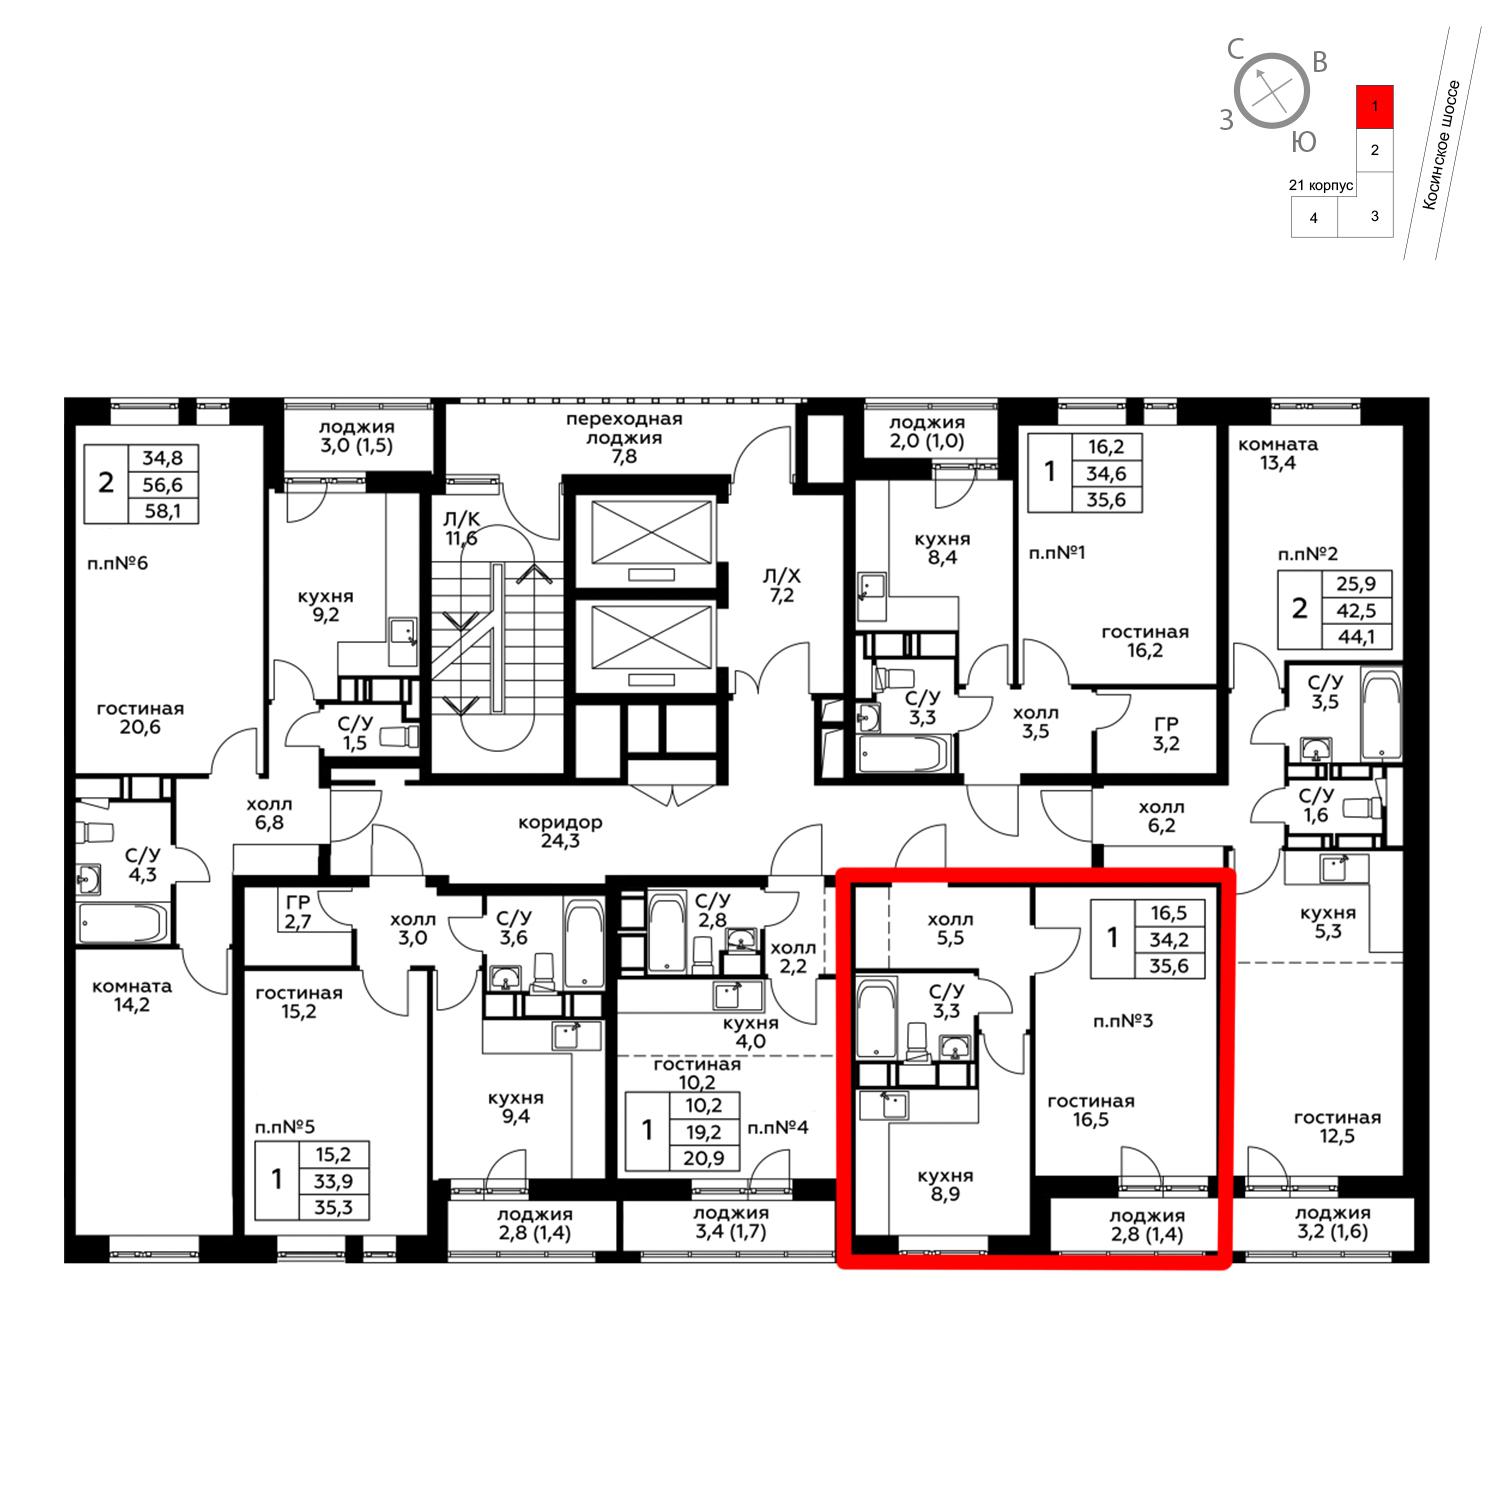 Продаётся 1-комнатная квартира в новостройке 35.6 кв.м. этаж 11/20 за 4 389 480 руб 